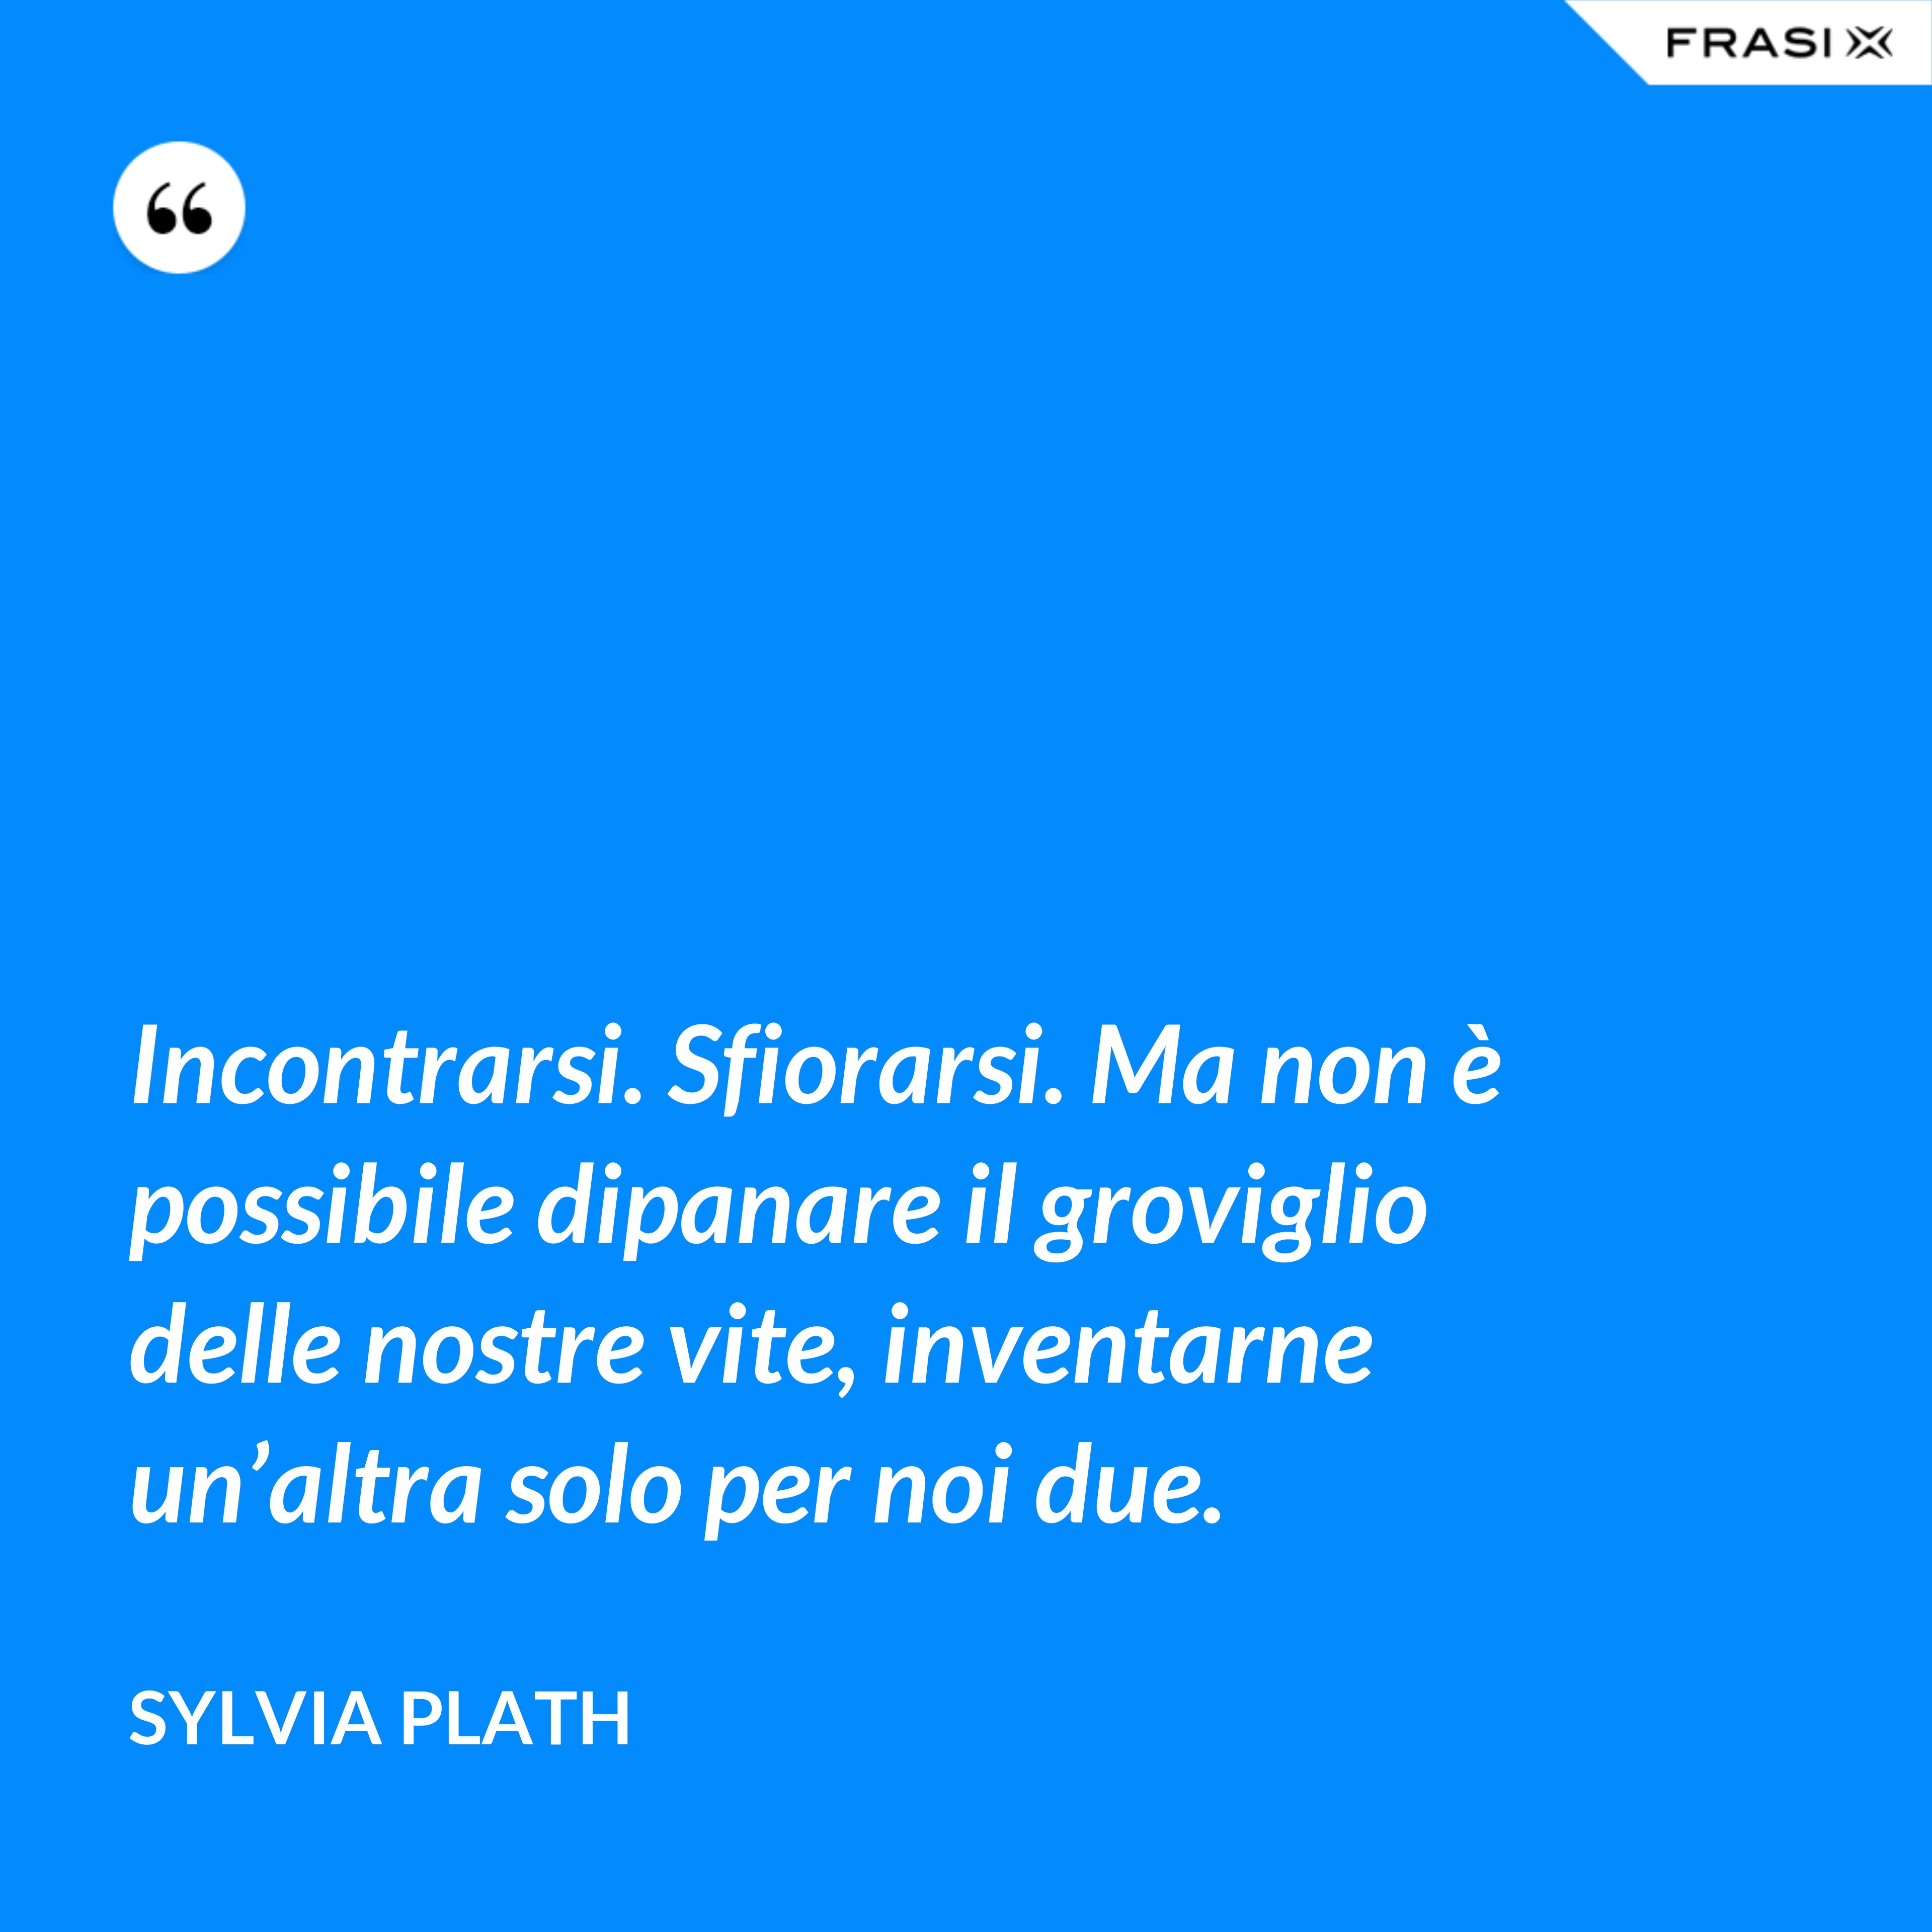 Incontrarsi. Sfiorarsi. Ma non è possibile dipanare il groviglio delle nostre vite, inventarne un’altra solo per noi due. - Sylvia Plath